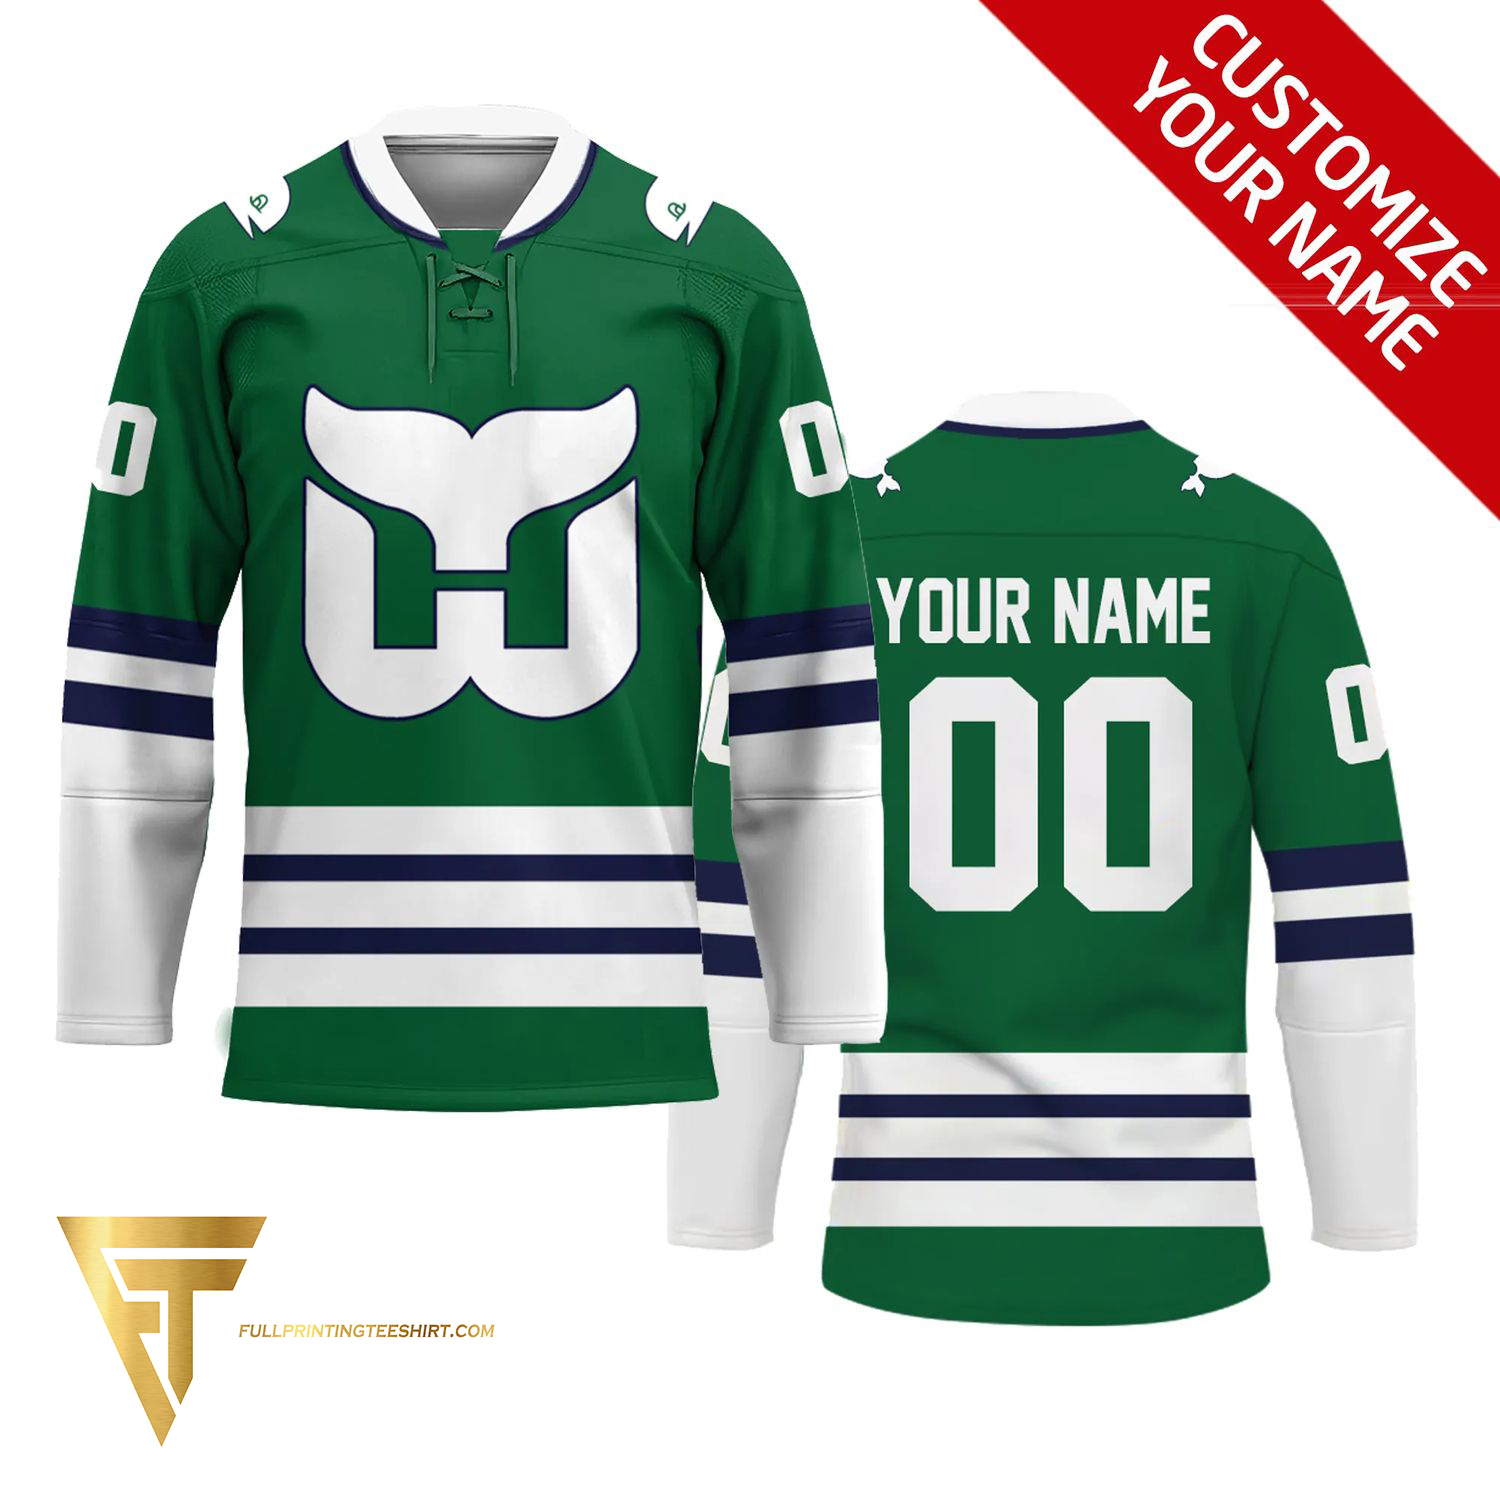 NHL Custom Shop, Customized NHL Hockey Apparel, Personalized NHL